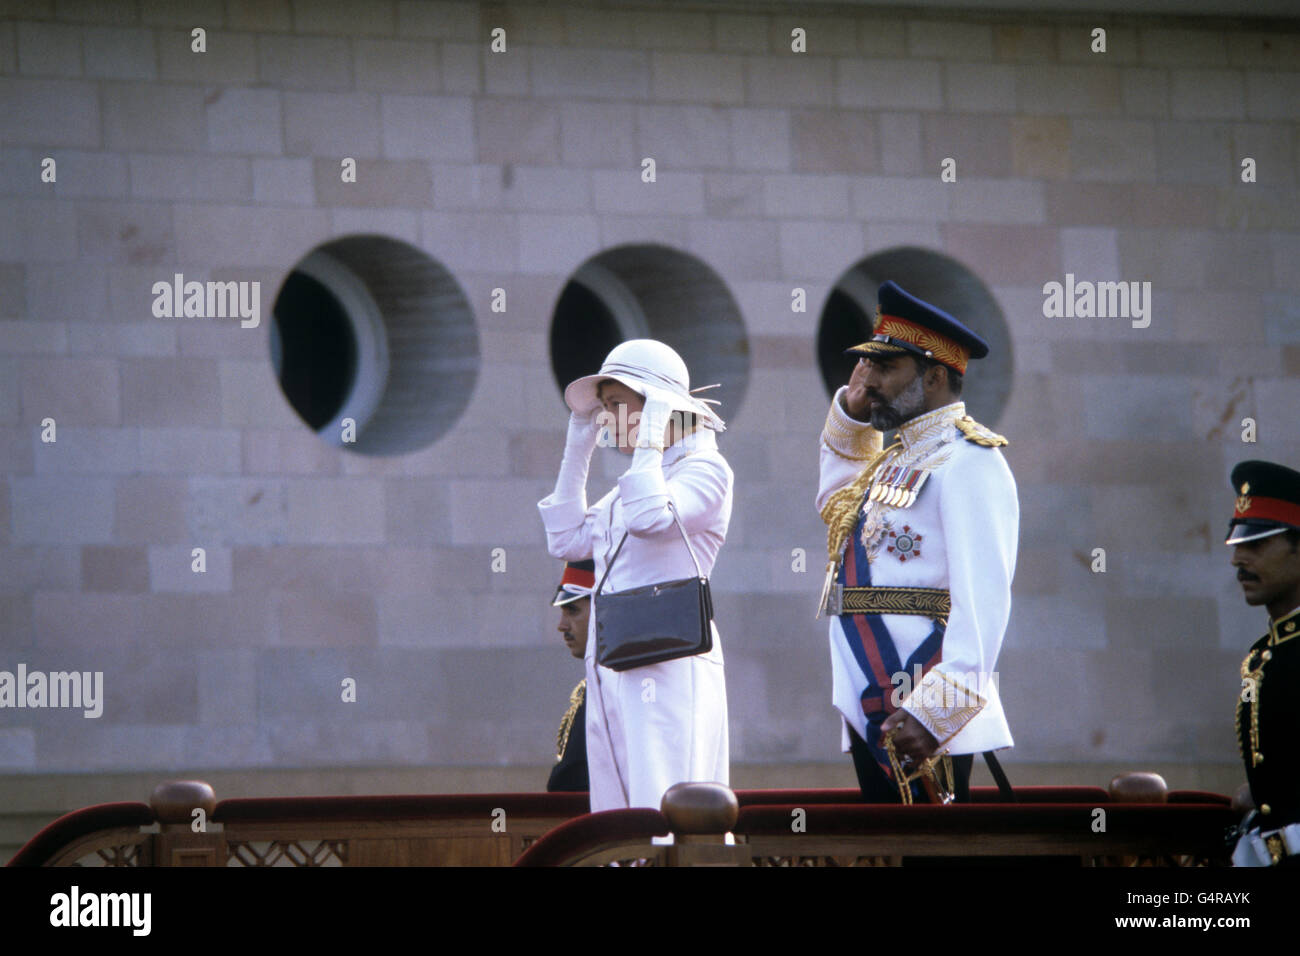 La reine Elizabeth II tient sur son chapeau comme elle se tient aux côtés du Sultan d'Oman, Sultan Qaboos bin a dit, comme ils prennent le salut pendant le jeu de l'hymne national dans le domaine du palais de Muscat. Banque D'Images